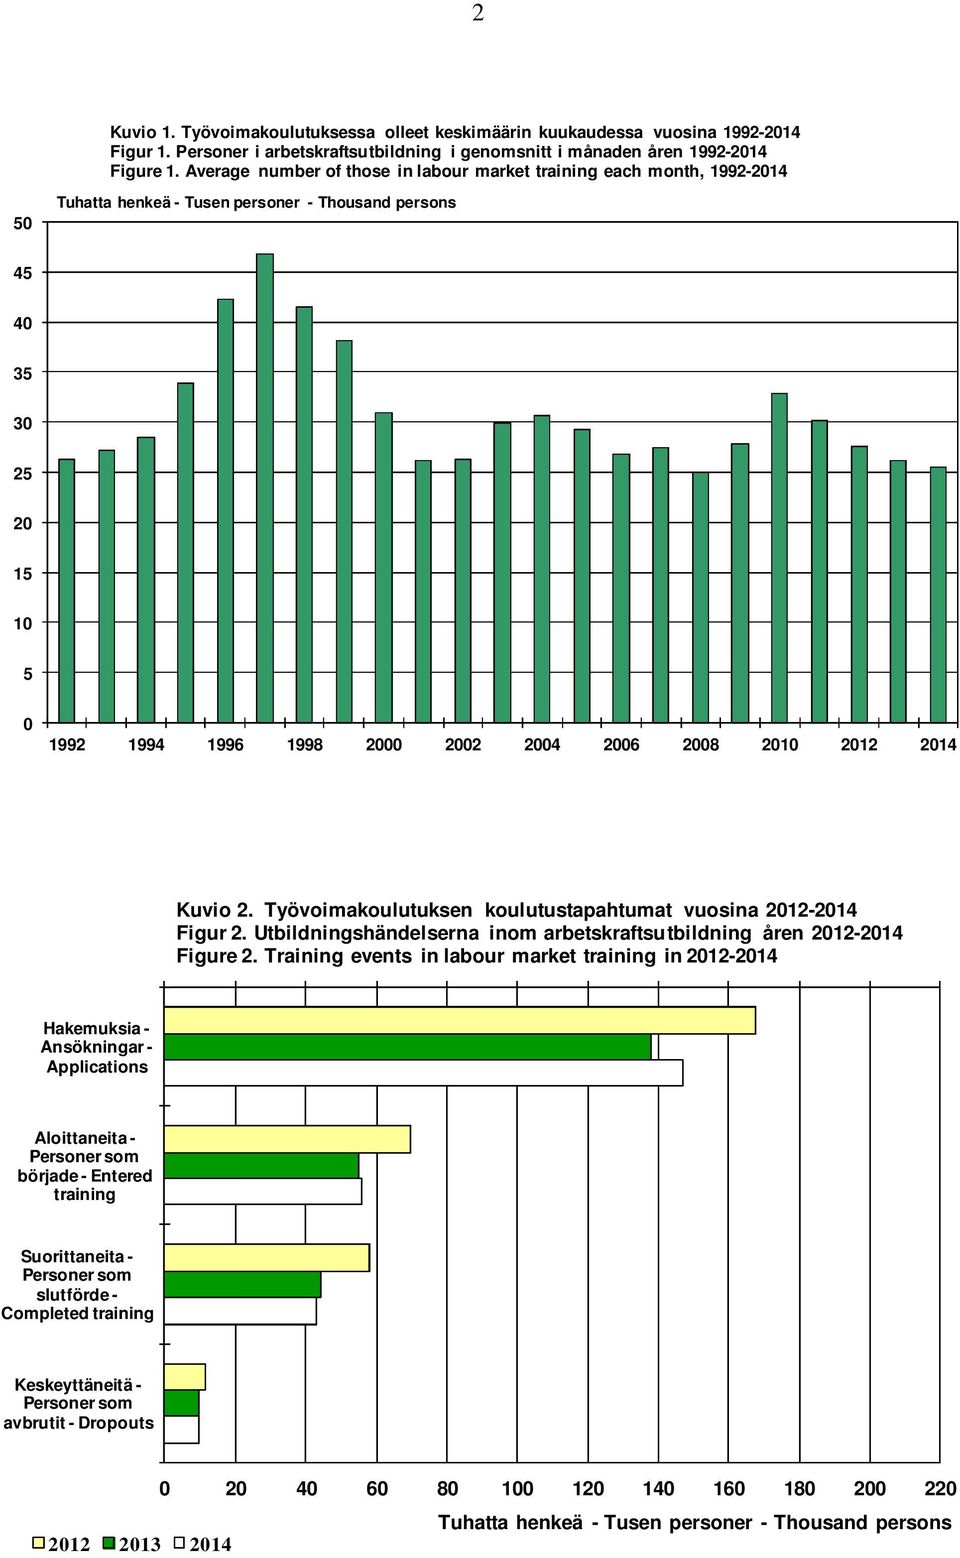 2010 2012 2014 Kuvio 2. Työvoimakoulutuksen koulutustapahtumat vuosina 2012-2014 Figur 2. Utbildningshändelserna inom arbetskraftsutbildning åren 2012-2014 Figure 2.